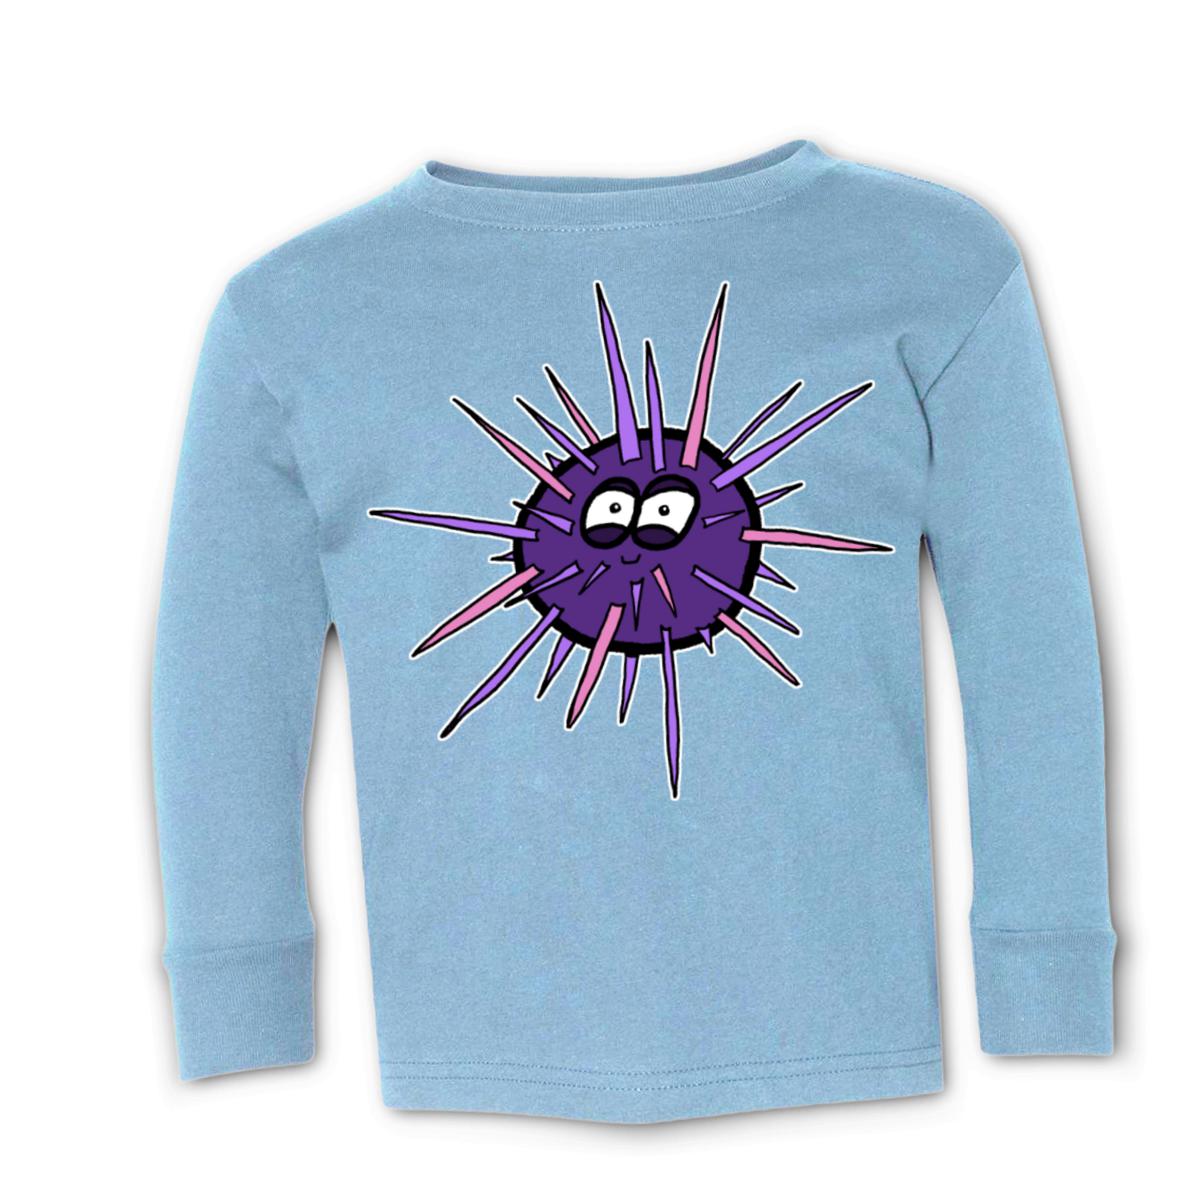 Sea Urchin Toddler Long Sleeve Tee 4T light-blue